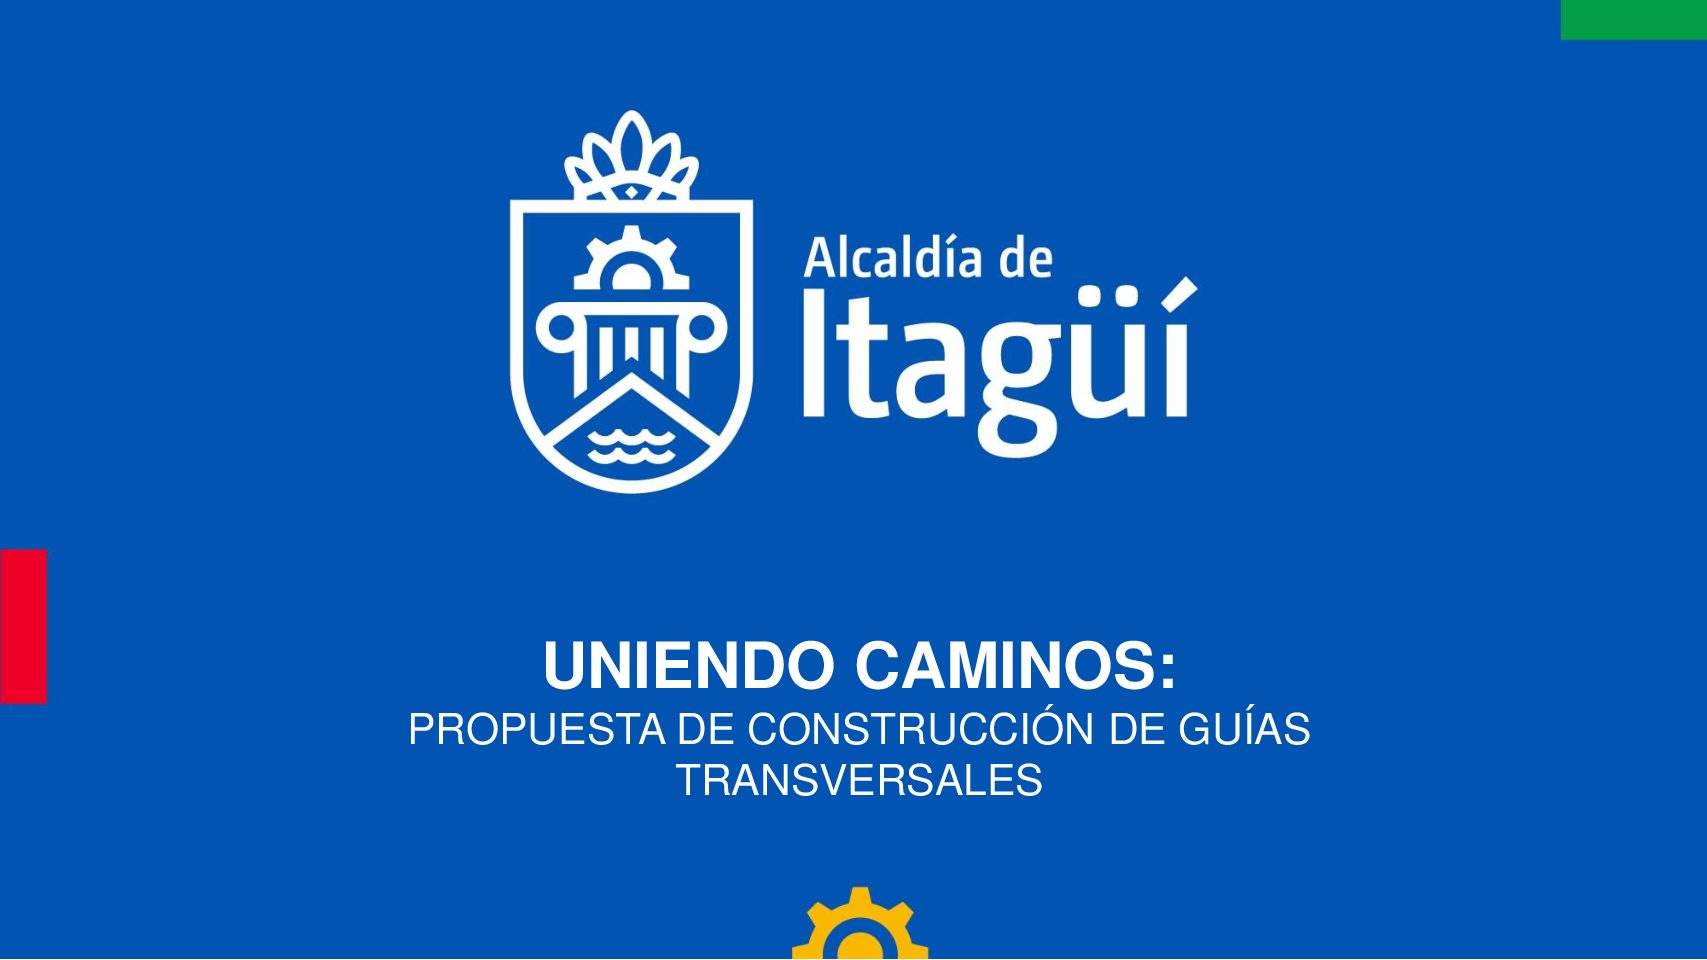 UNIENDO CAMINOS: PROPUESTA DE CONSTRUCCIÓN DE GUÍAS TRANSVERSALES